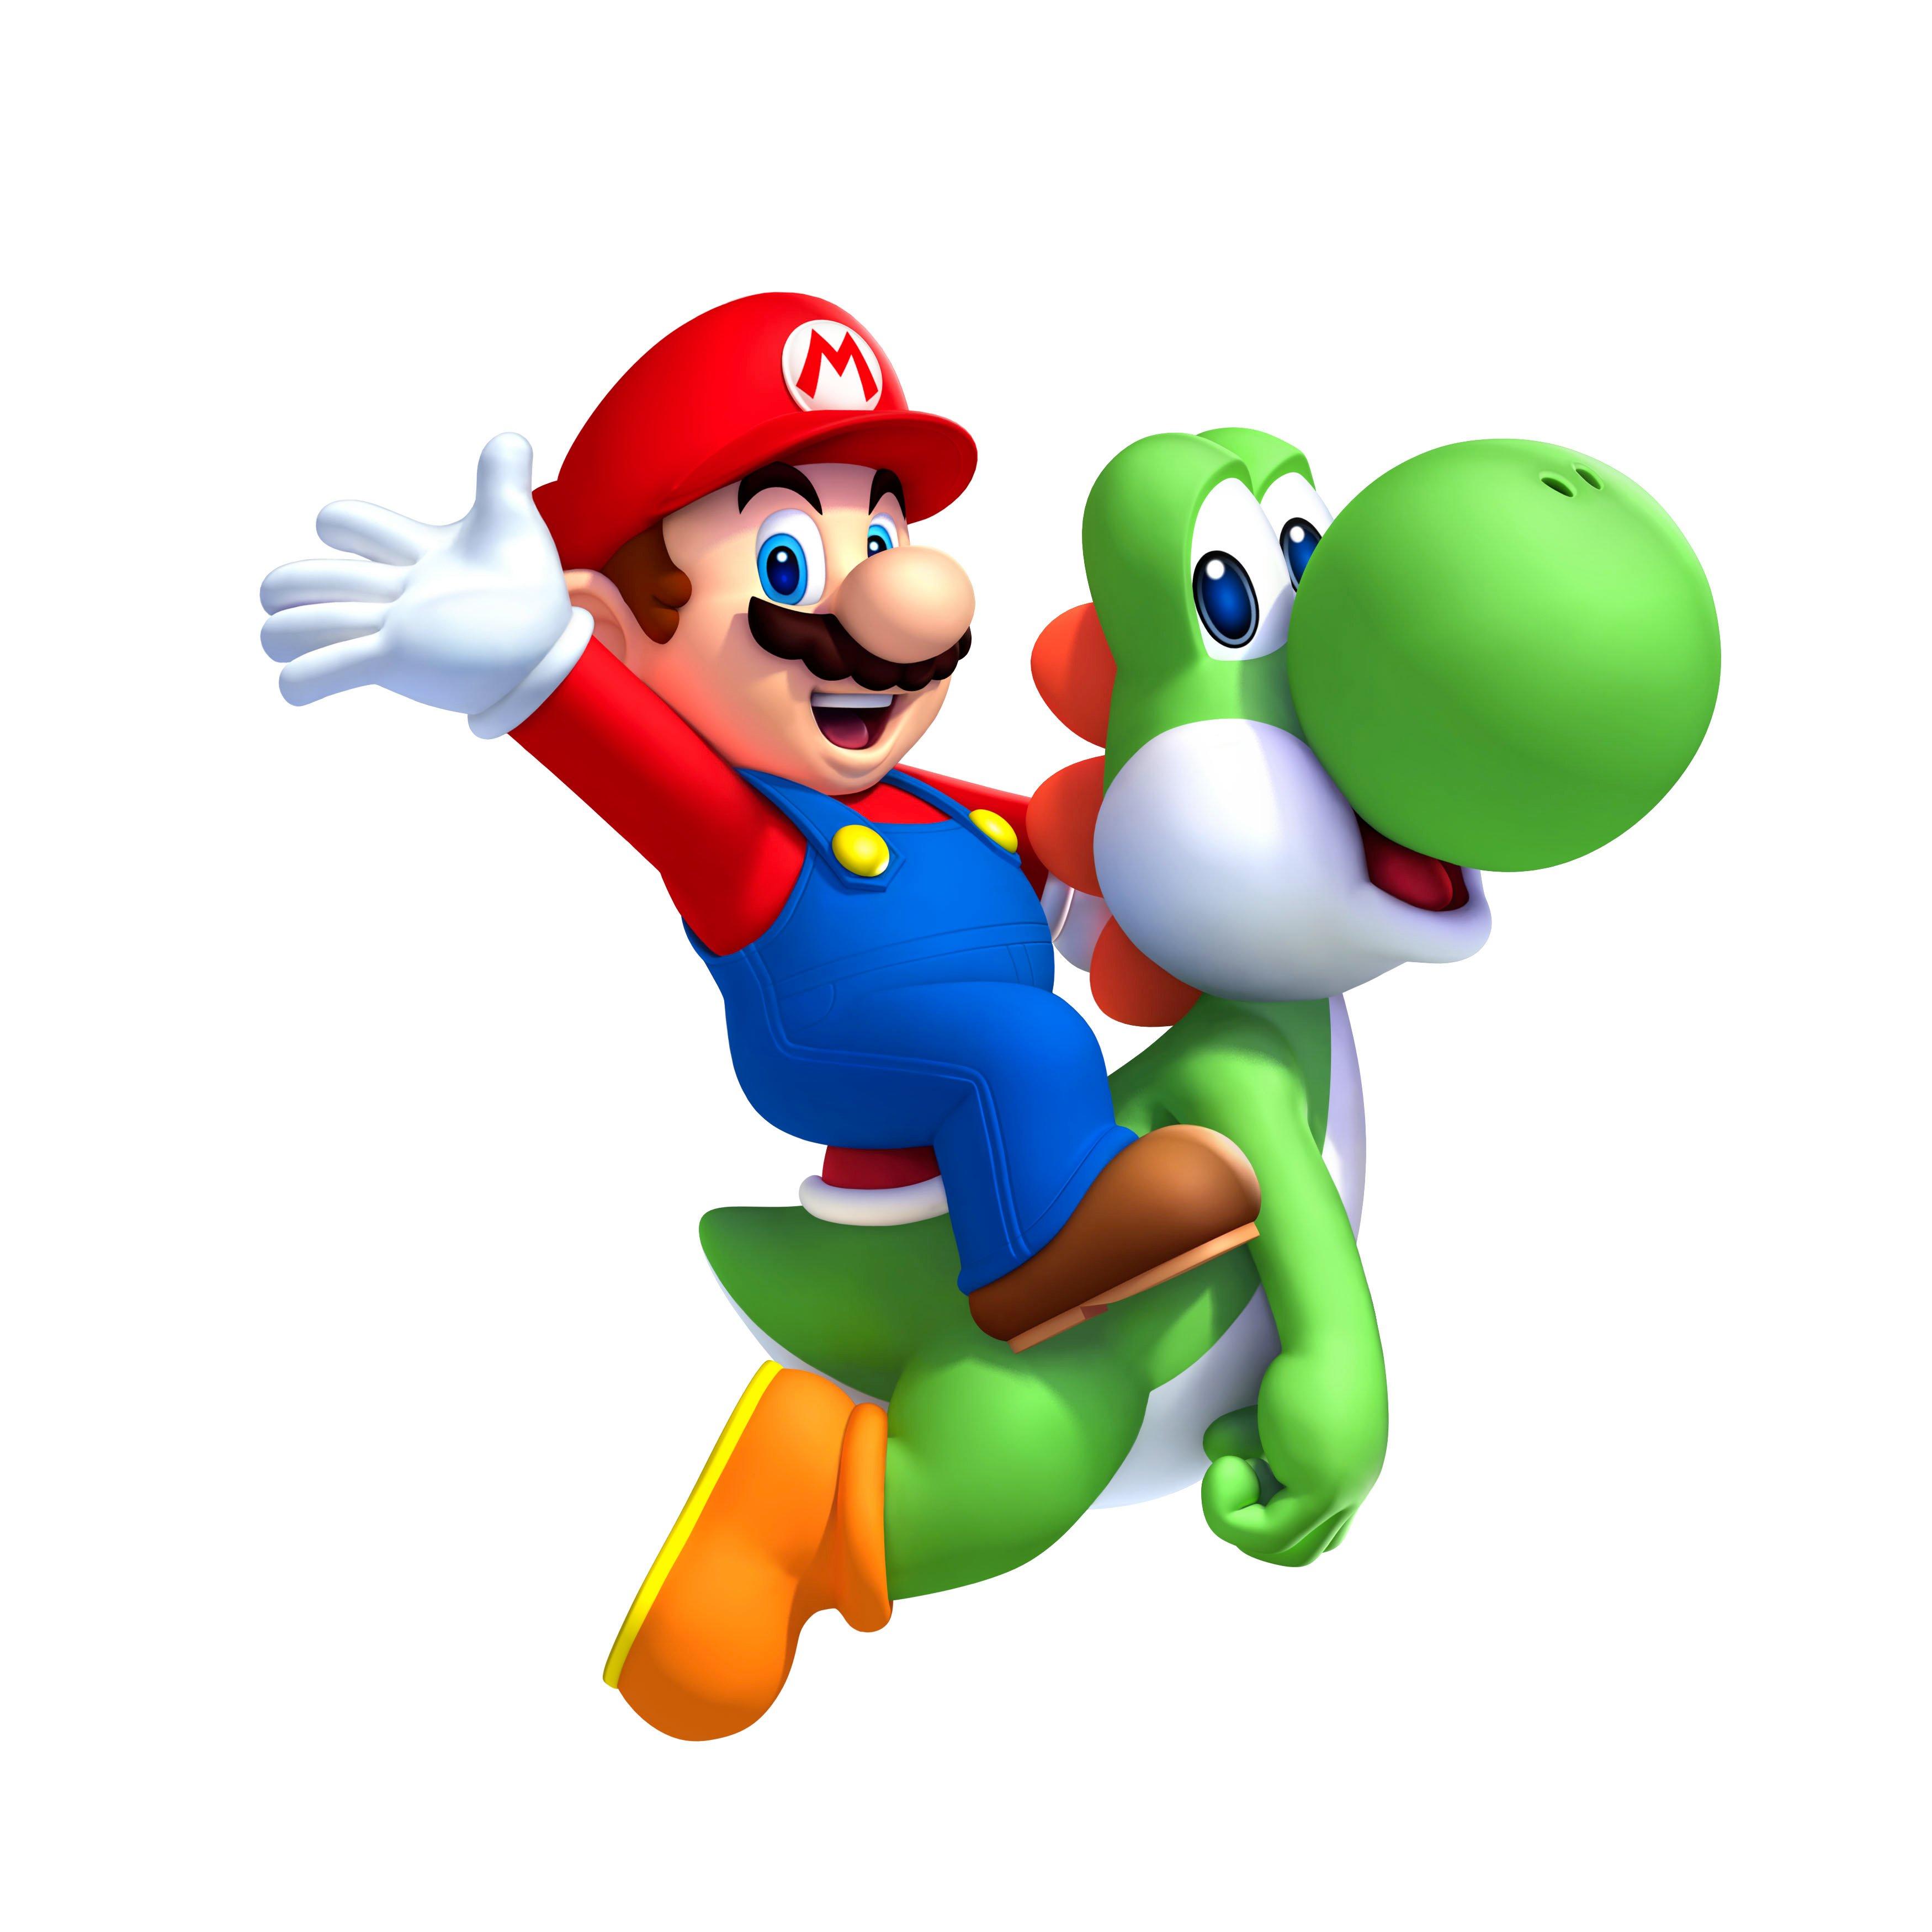 New Super Mario Bros U + New Super Luigi U Nintendo Wii U 